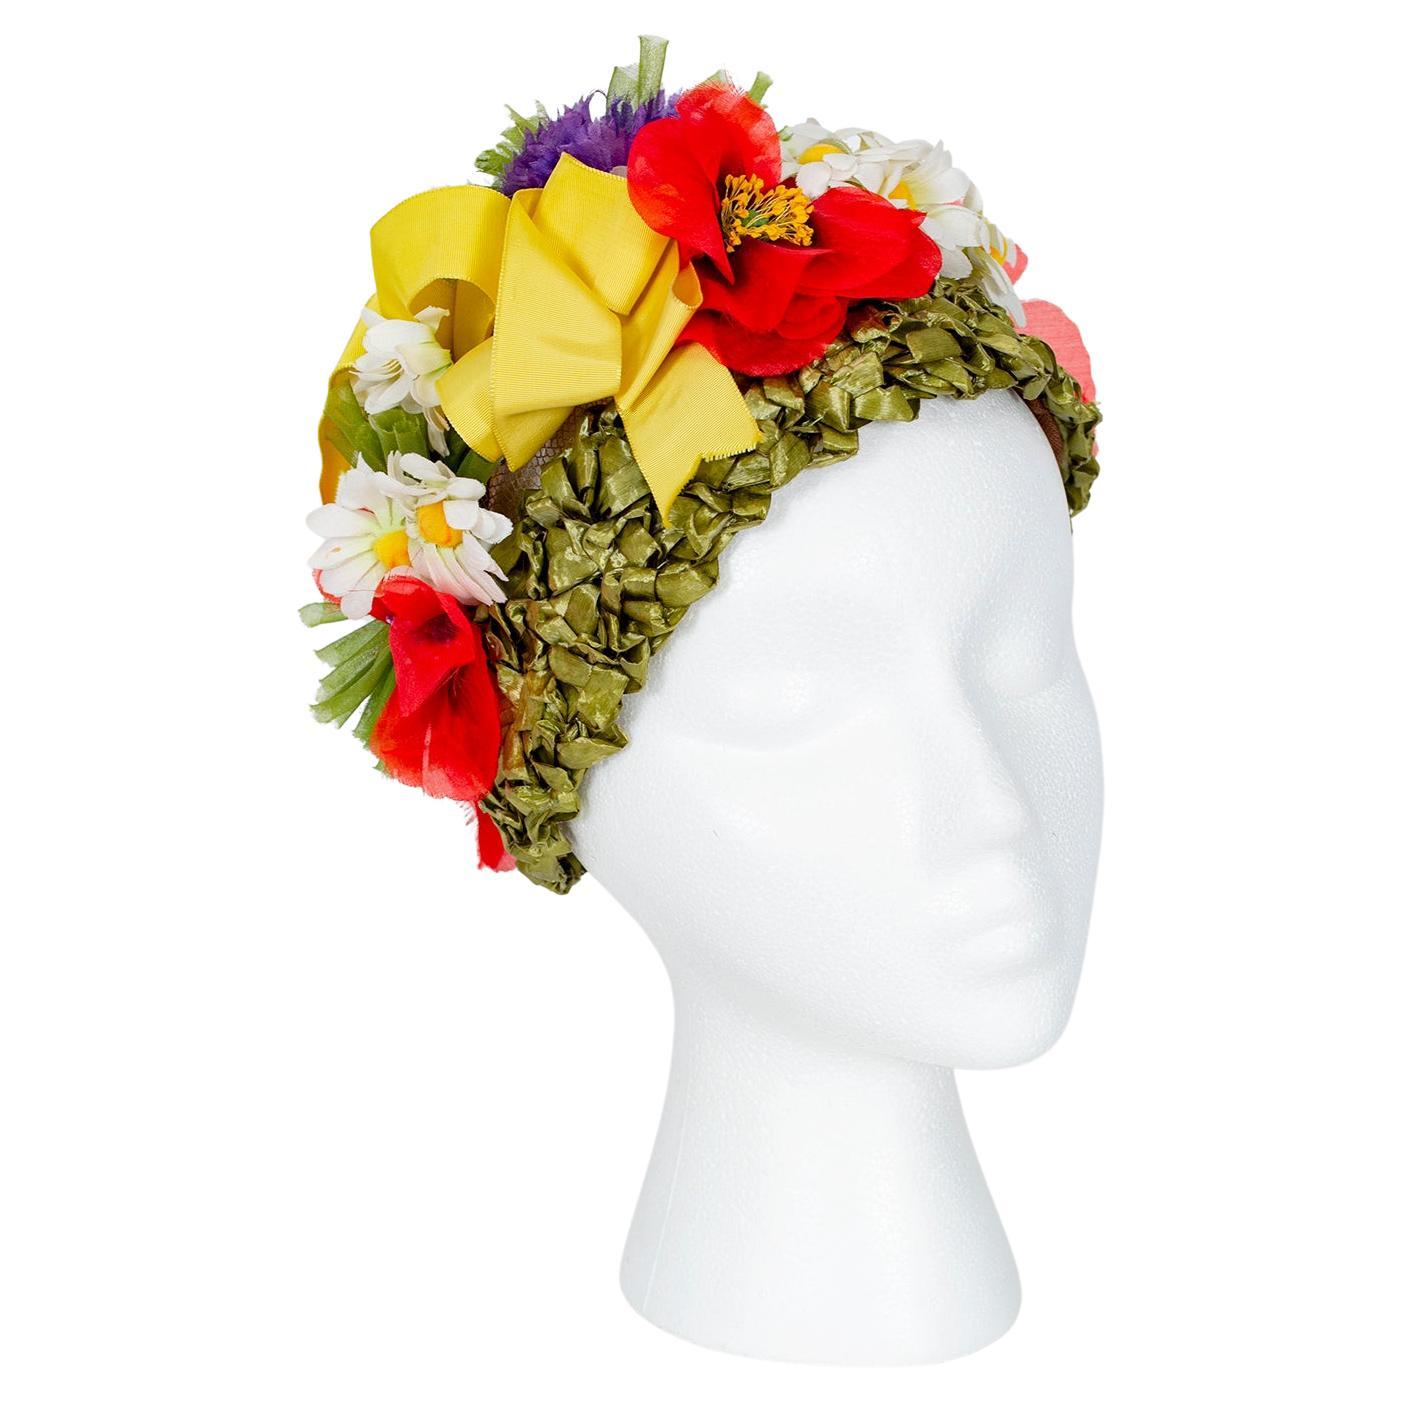 Irene of New York Chapeau turban à fleurs vertes, rouges, jaunes et violettes - M, années 1960